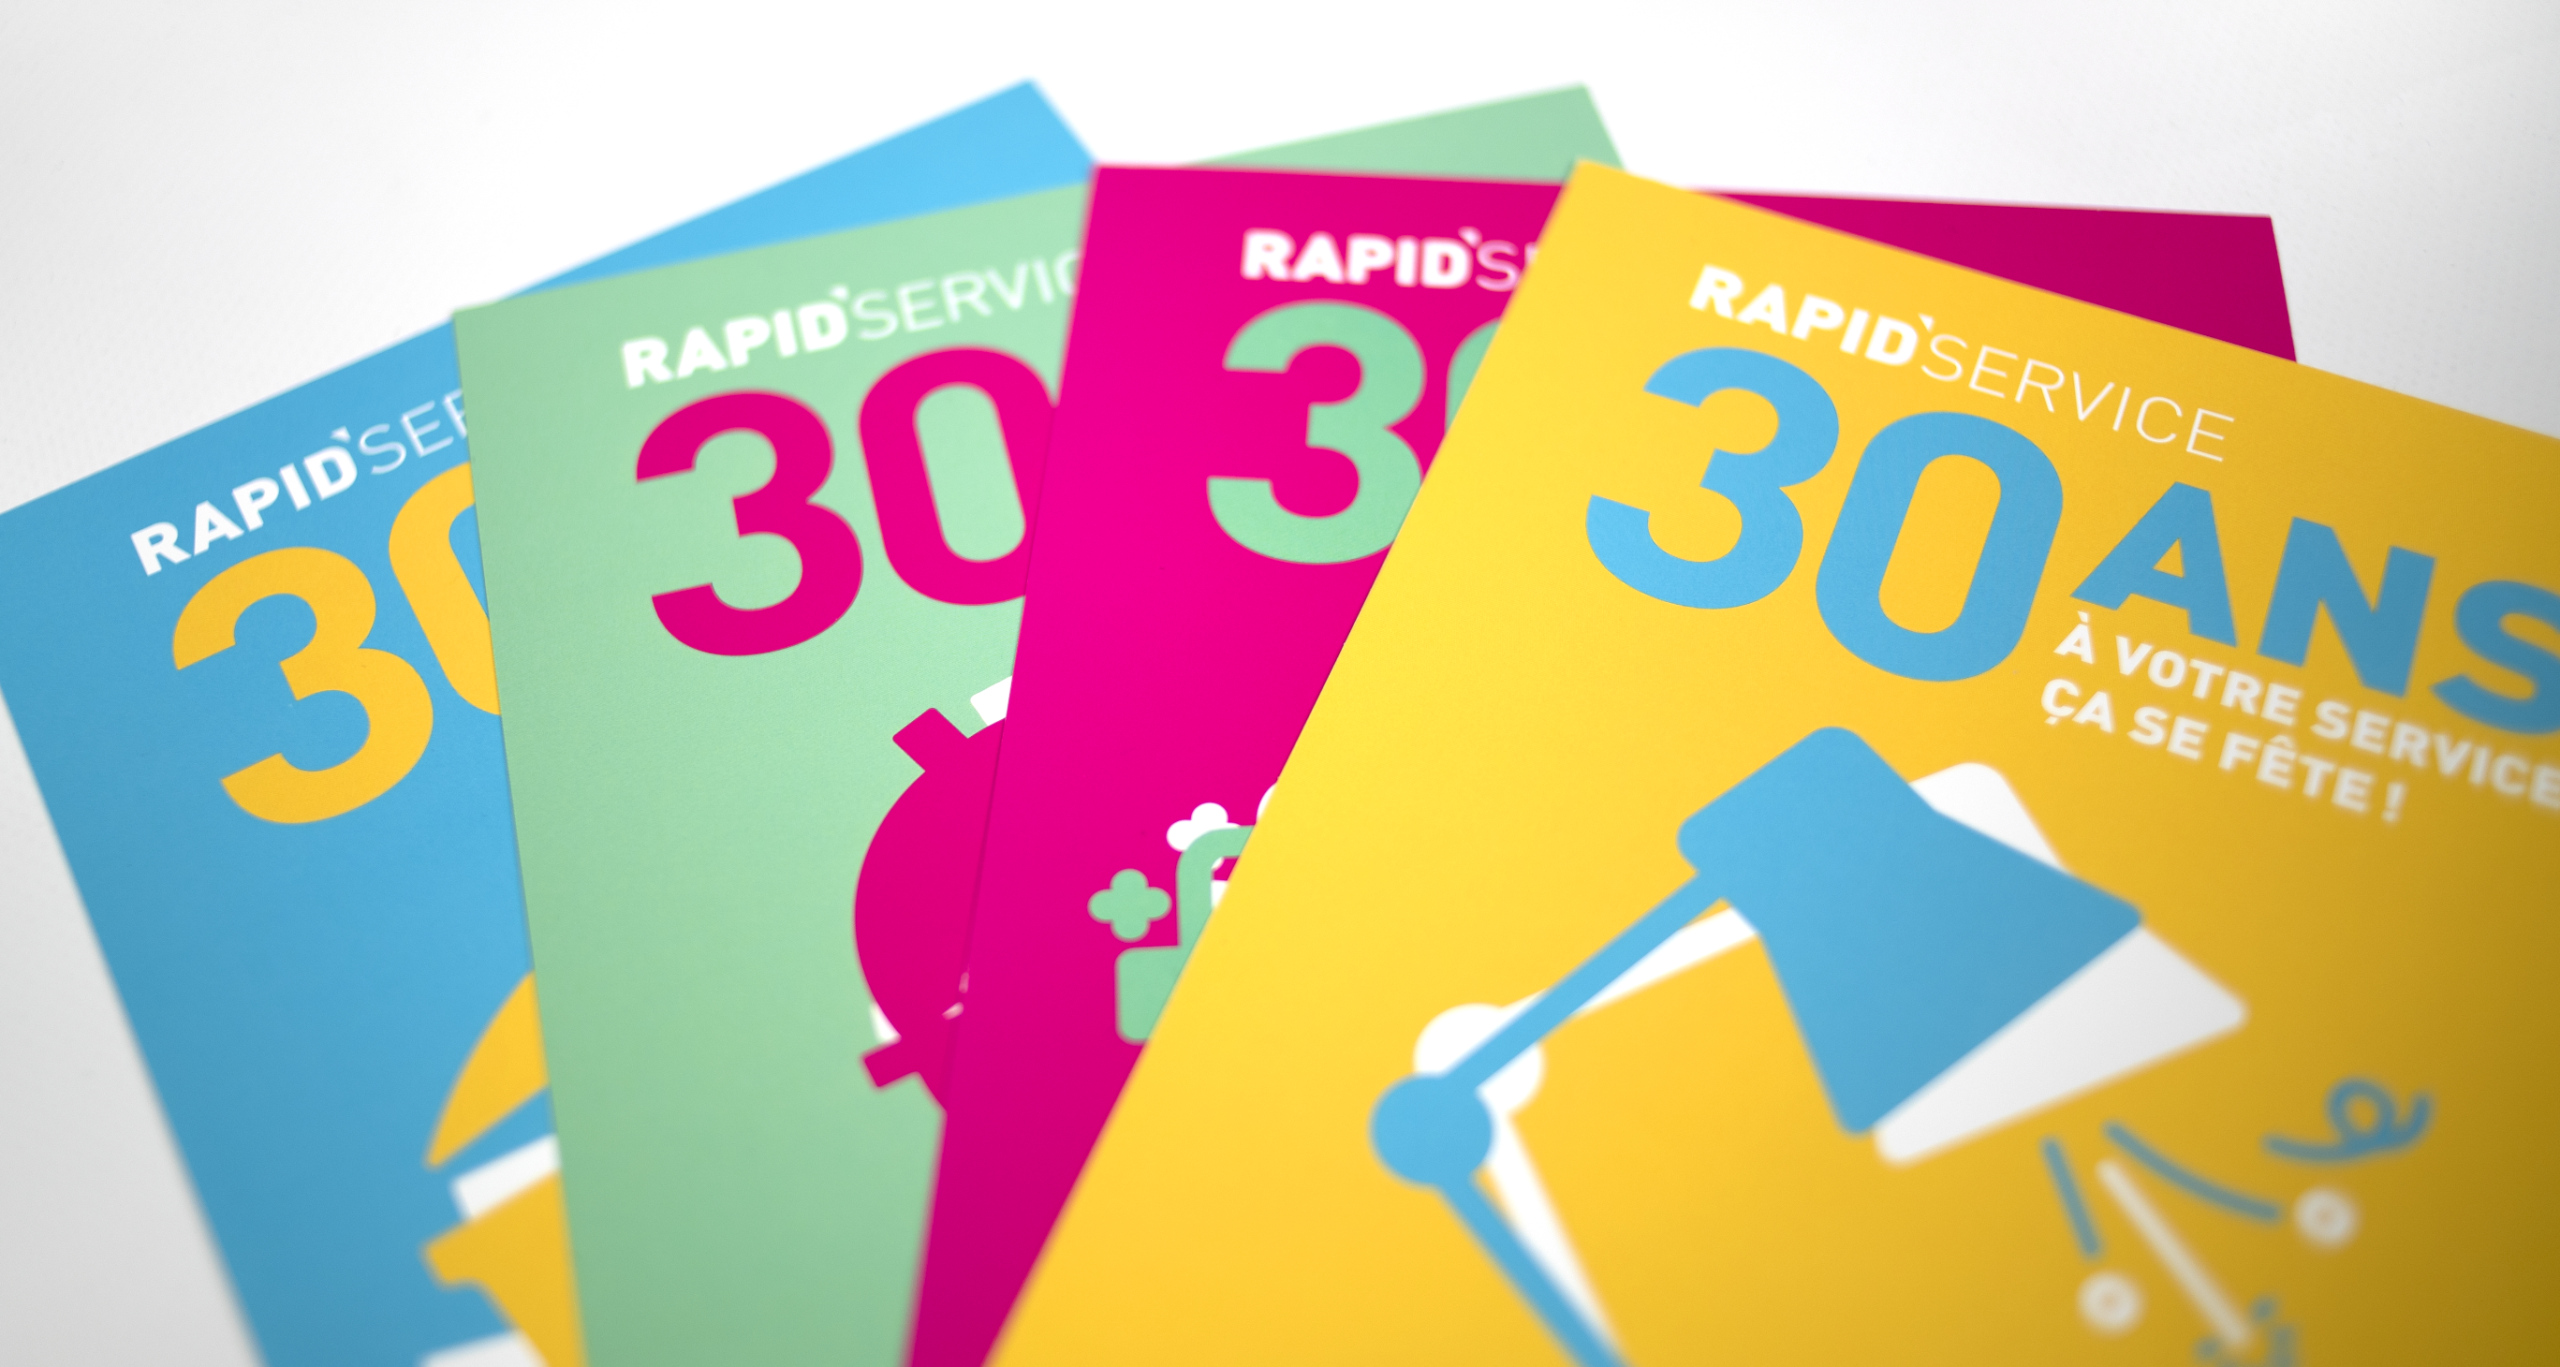 Aperçu des 4 flyers promotionnels pour les 30 ans de Rapid'Service